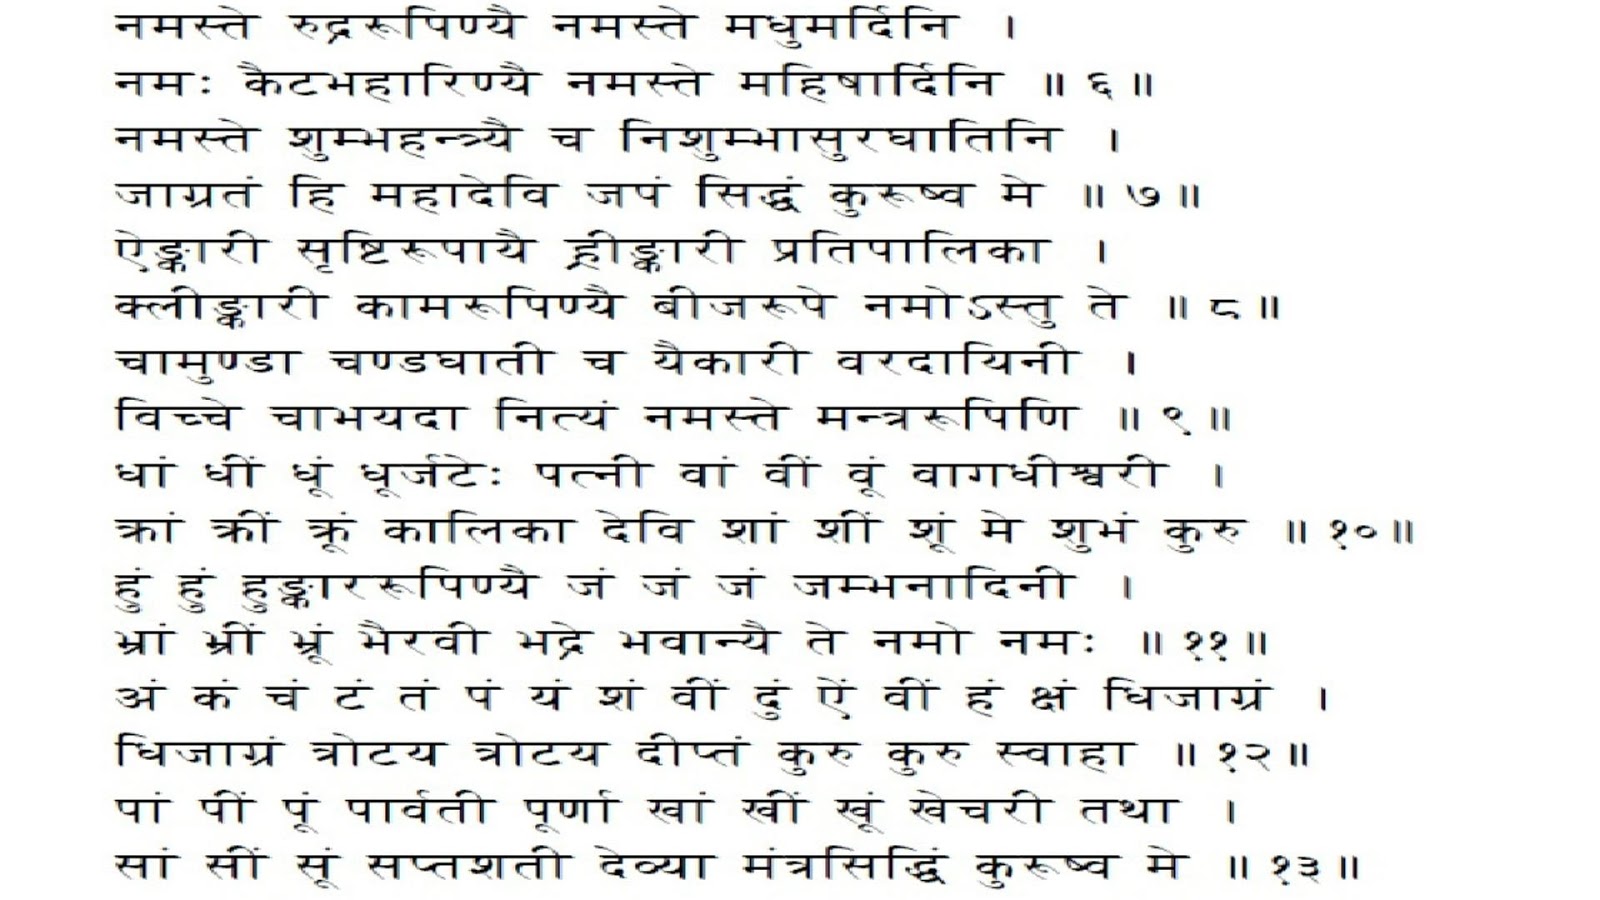 durga saptashati in marathi pdf free